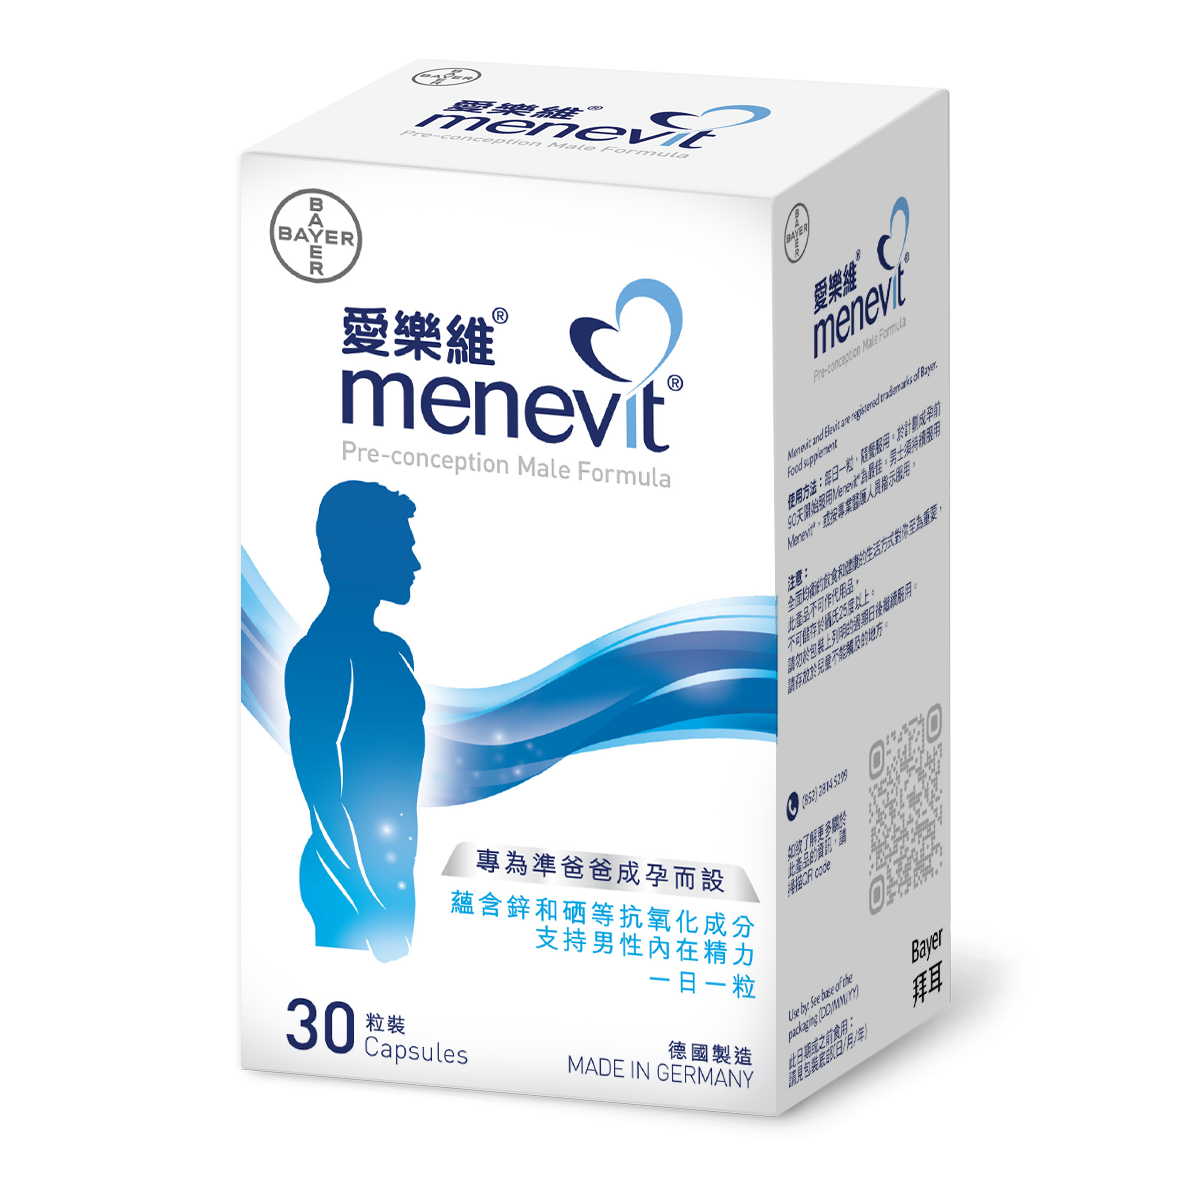 Menevi-packshot